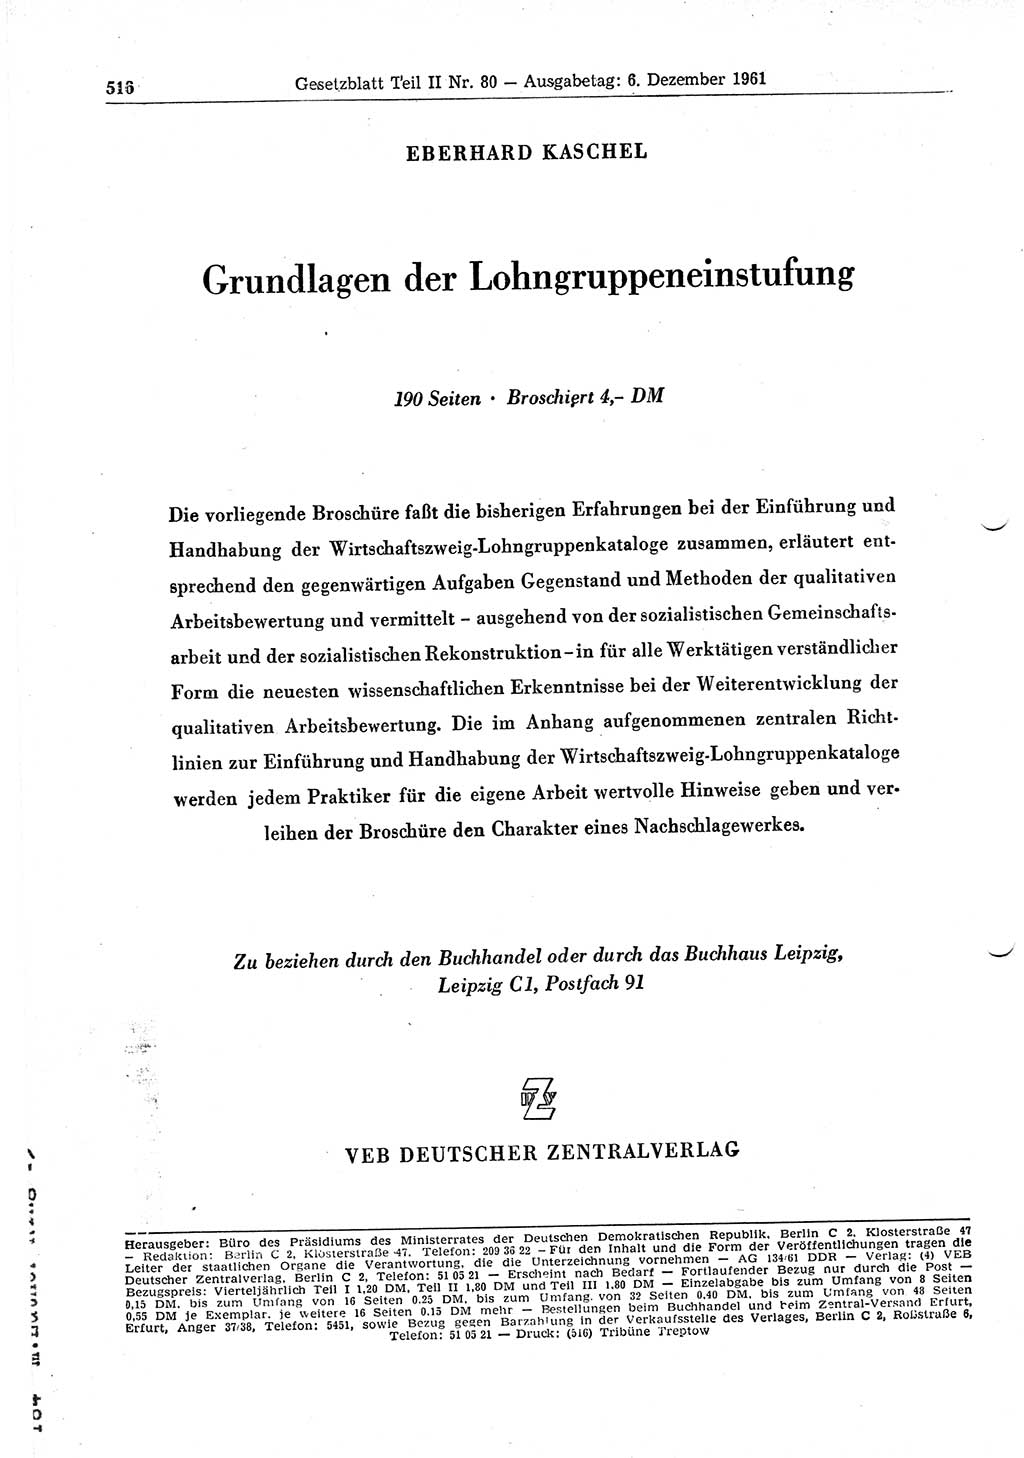 Gesetzblatt (GBl.) der Deutschen Demokratischen Republik (DDR) Teil ⅠⅠ 1961, Seite 516 (GBl. DDR ⅠⅠ 1961, S. 516)